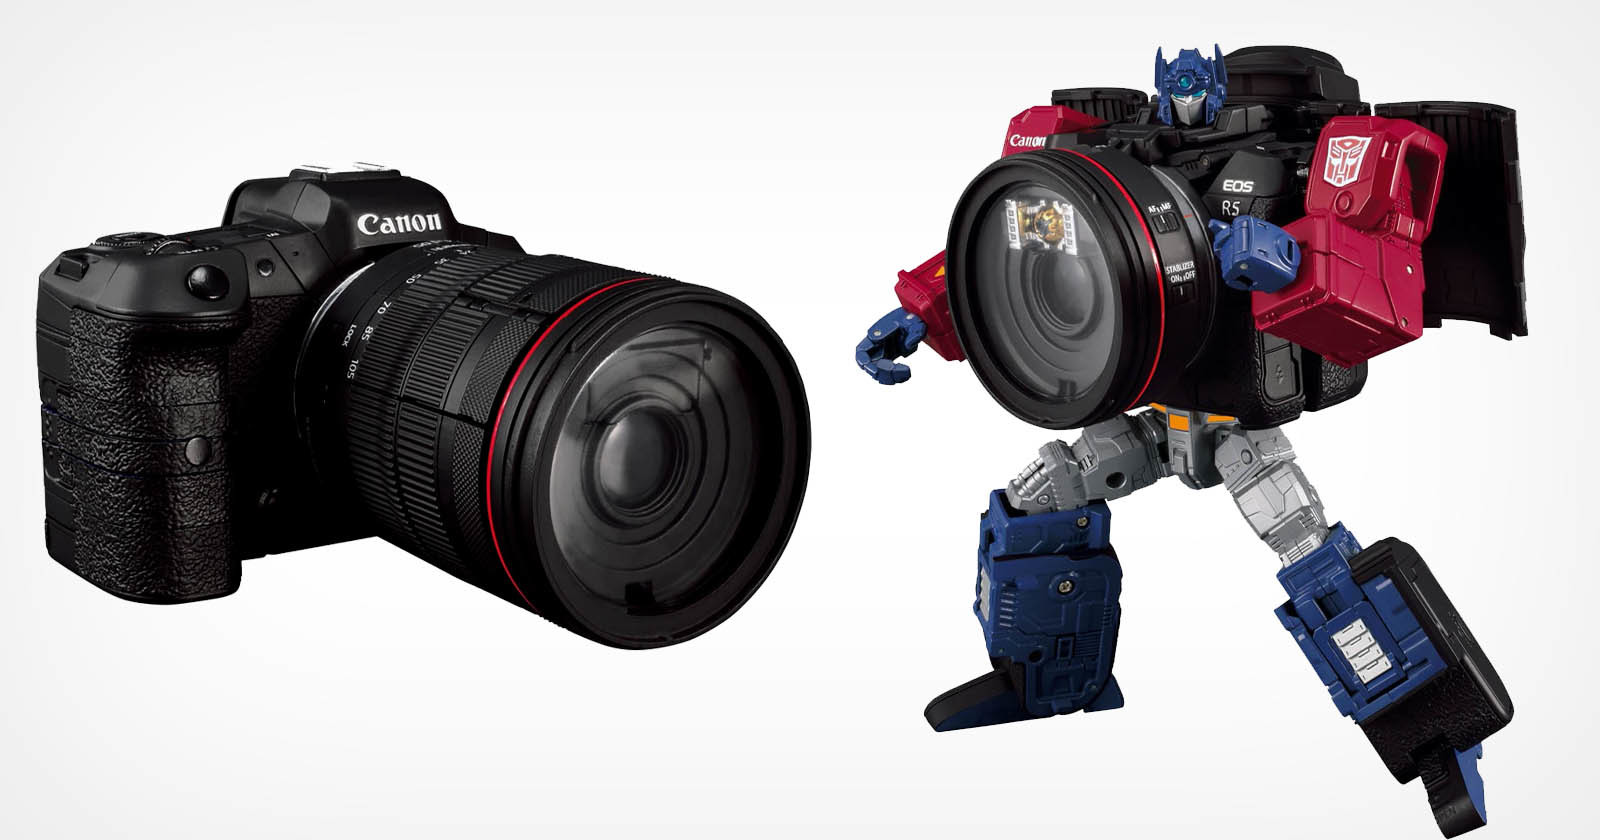  these canon cameras are actually transformer robots disguise 